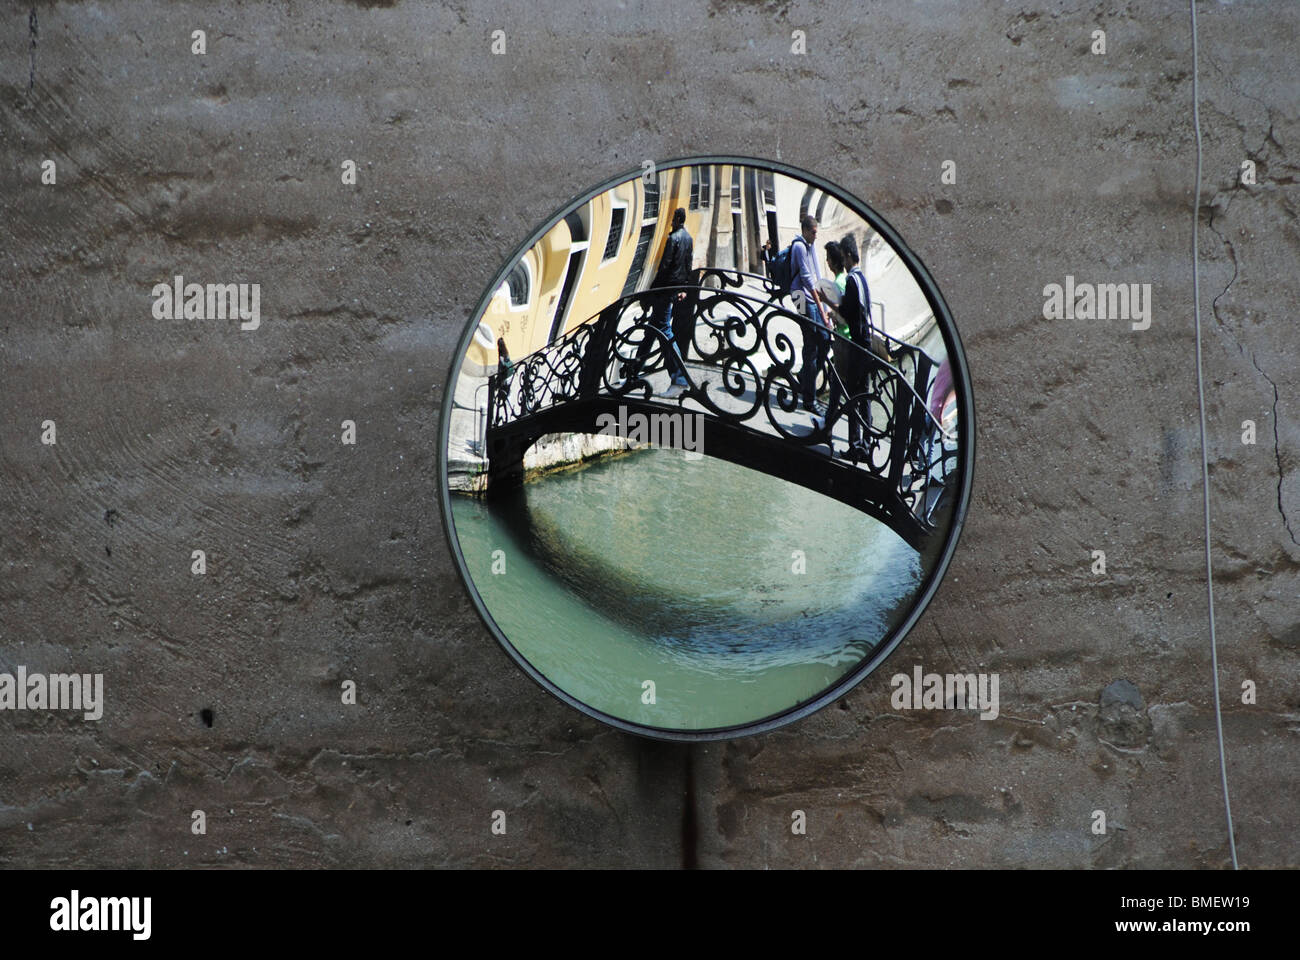 Miroir et canal à un point aveugle pour la circulation des bateaux, Venise, Italie Banque D'Images